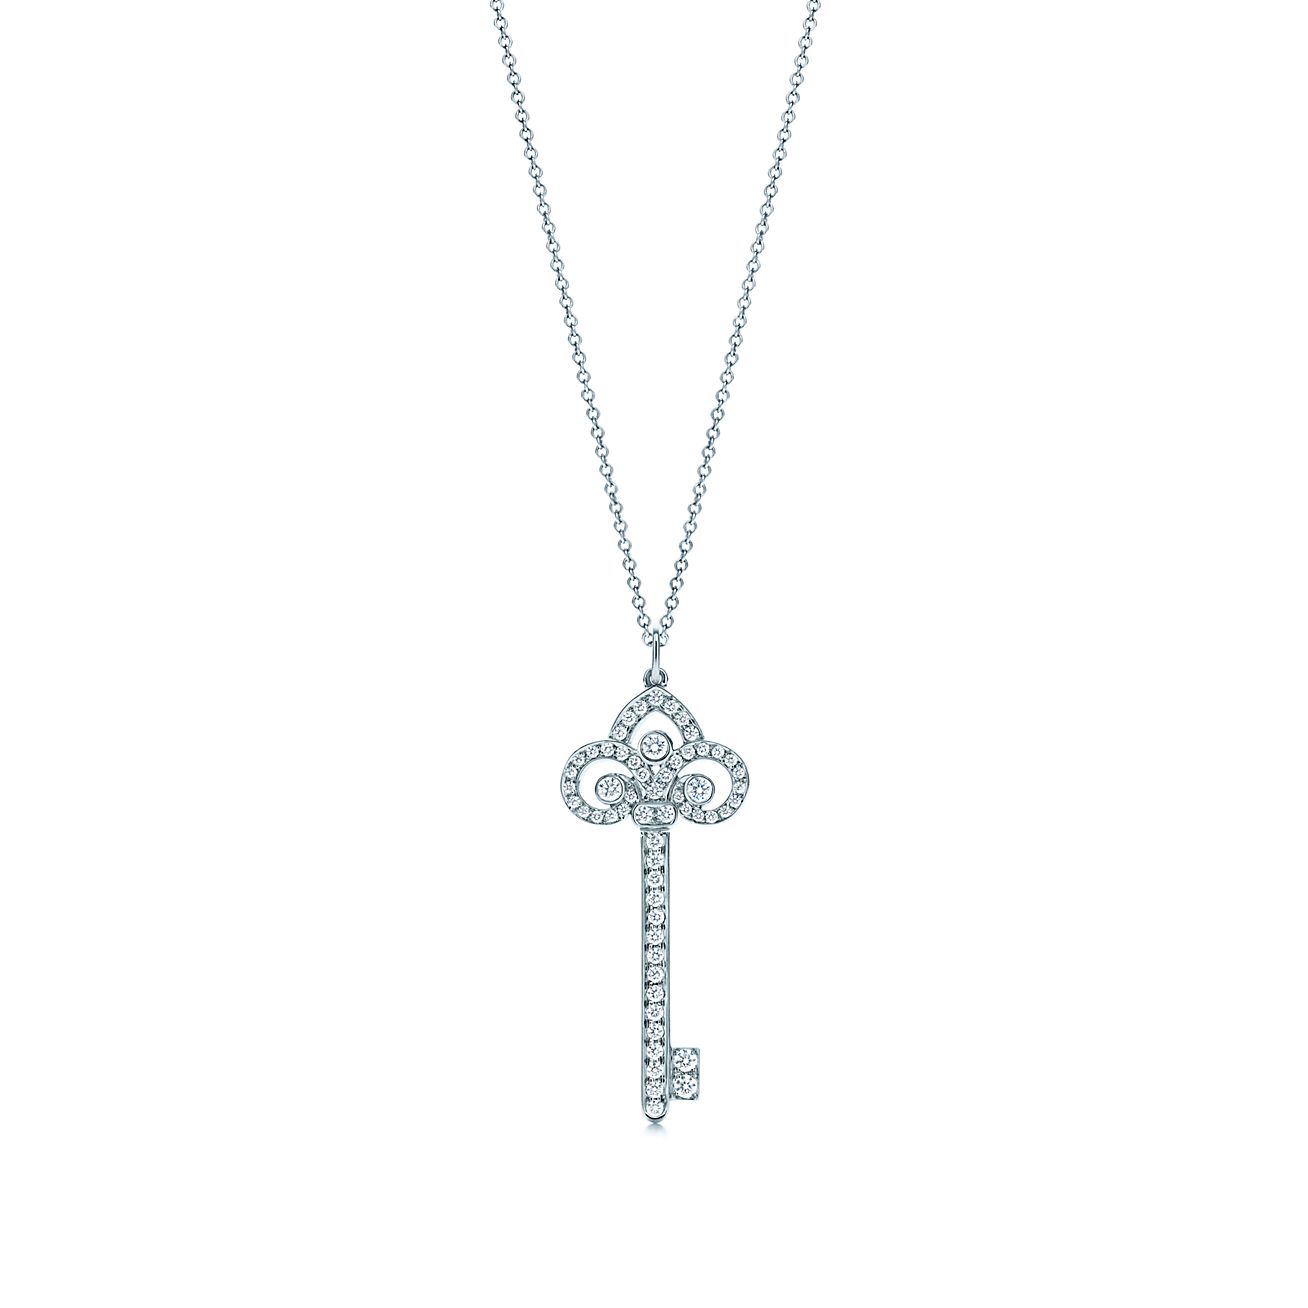 tiffany 3 keys necklace